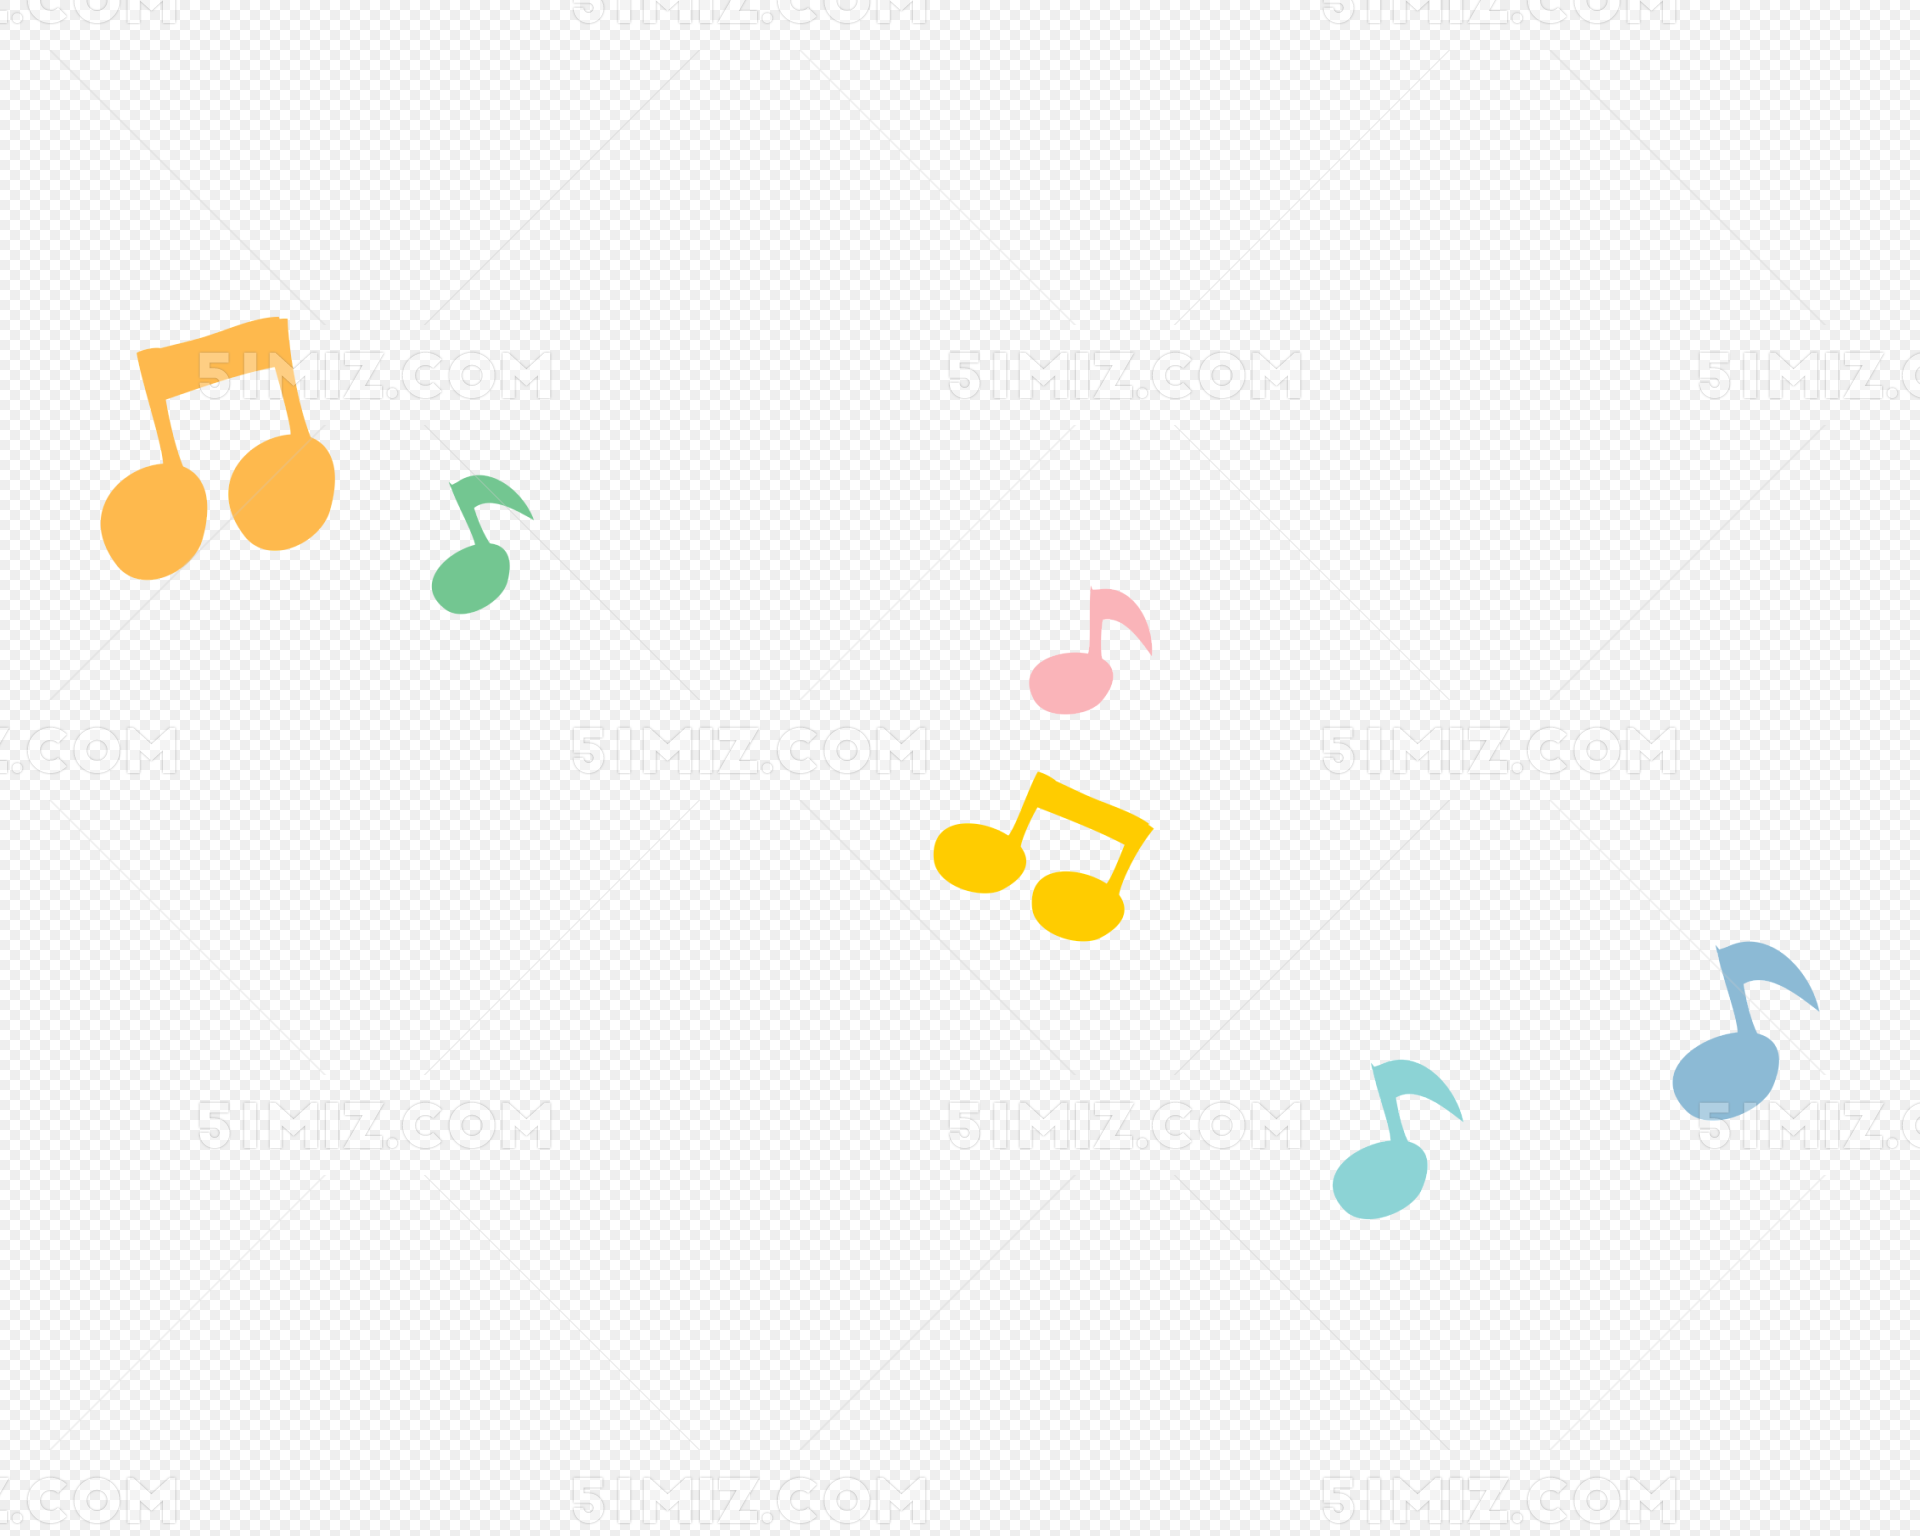 音乐符号素材免费下载 - 觅知网